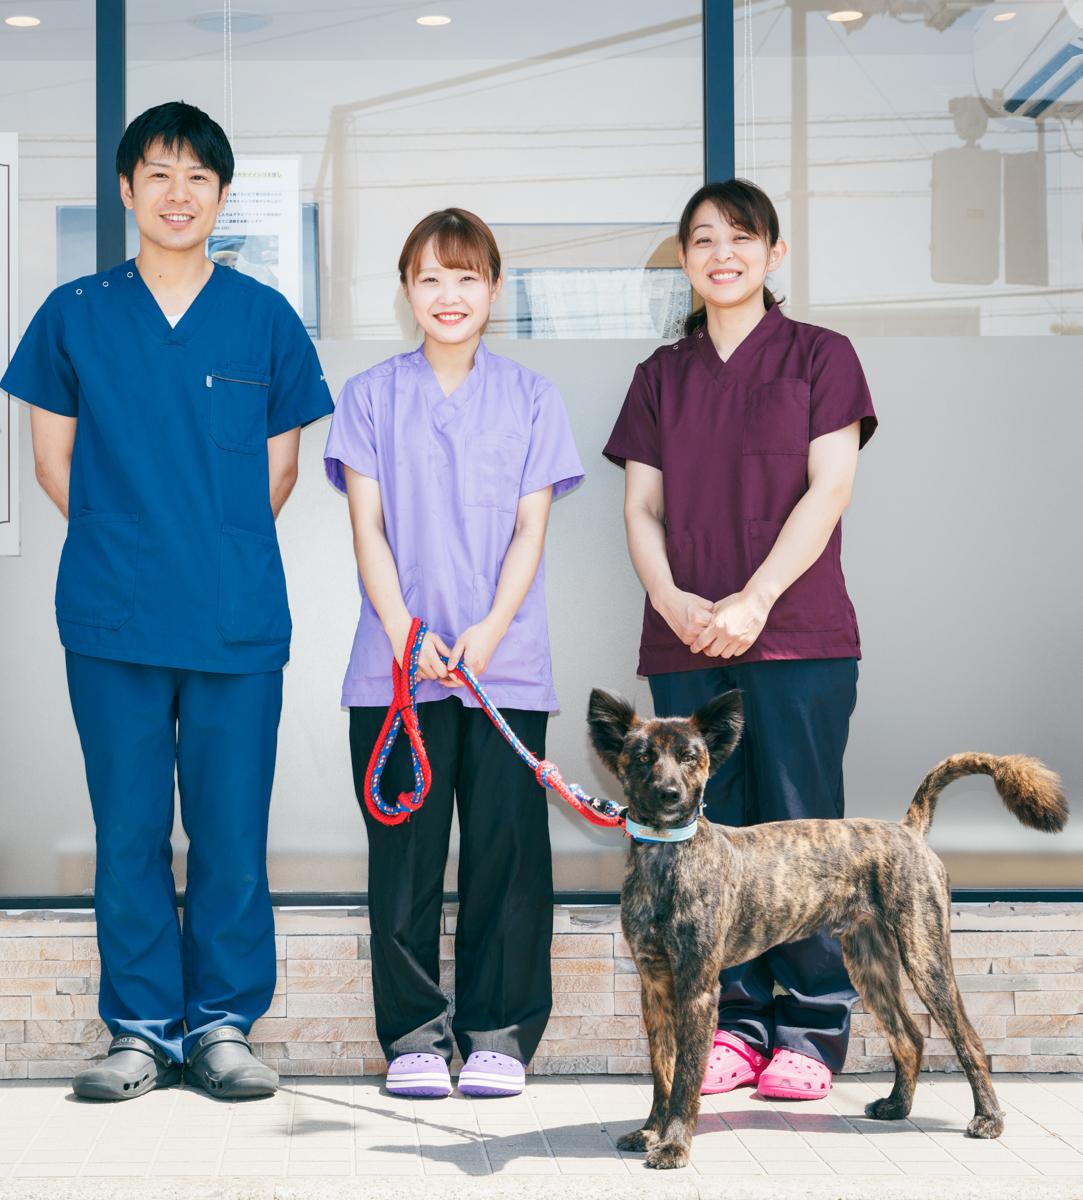 かっしー動物病院 トリマー兼動物看護士募集 19年openの医院です 動物病院 獣医師 動物看護師 トリマーの求人サイト ペットリクルート